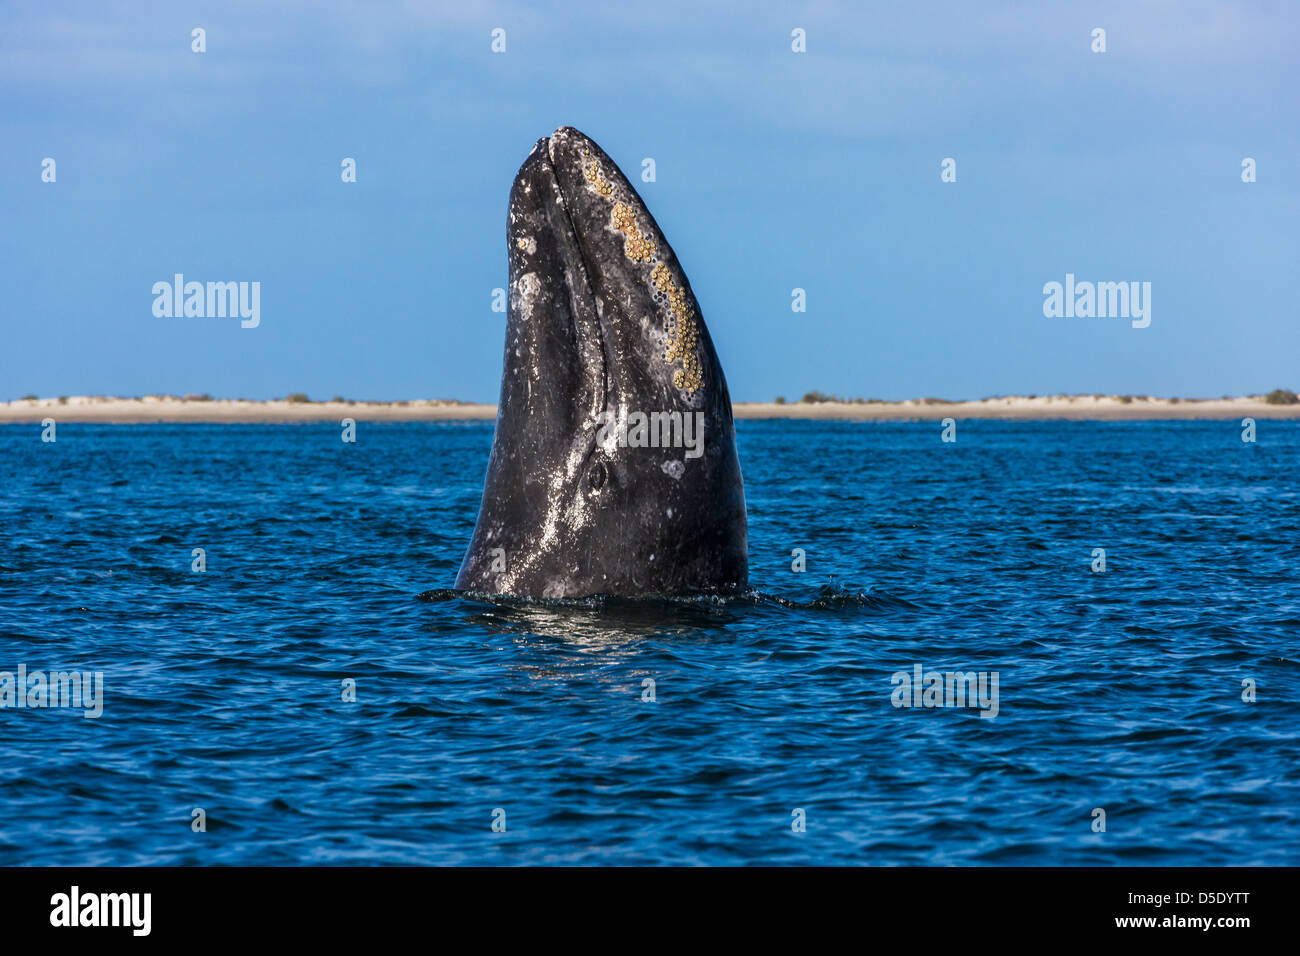 Baleine grise spyhopping dans la mer de Cortez, Baja California, Mexique Banque D'Images